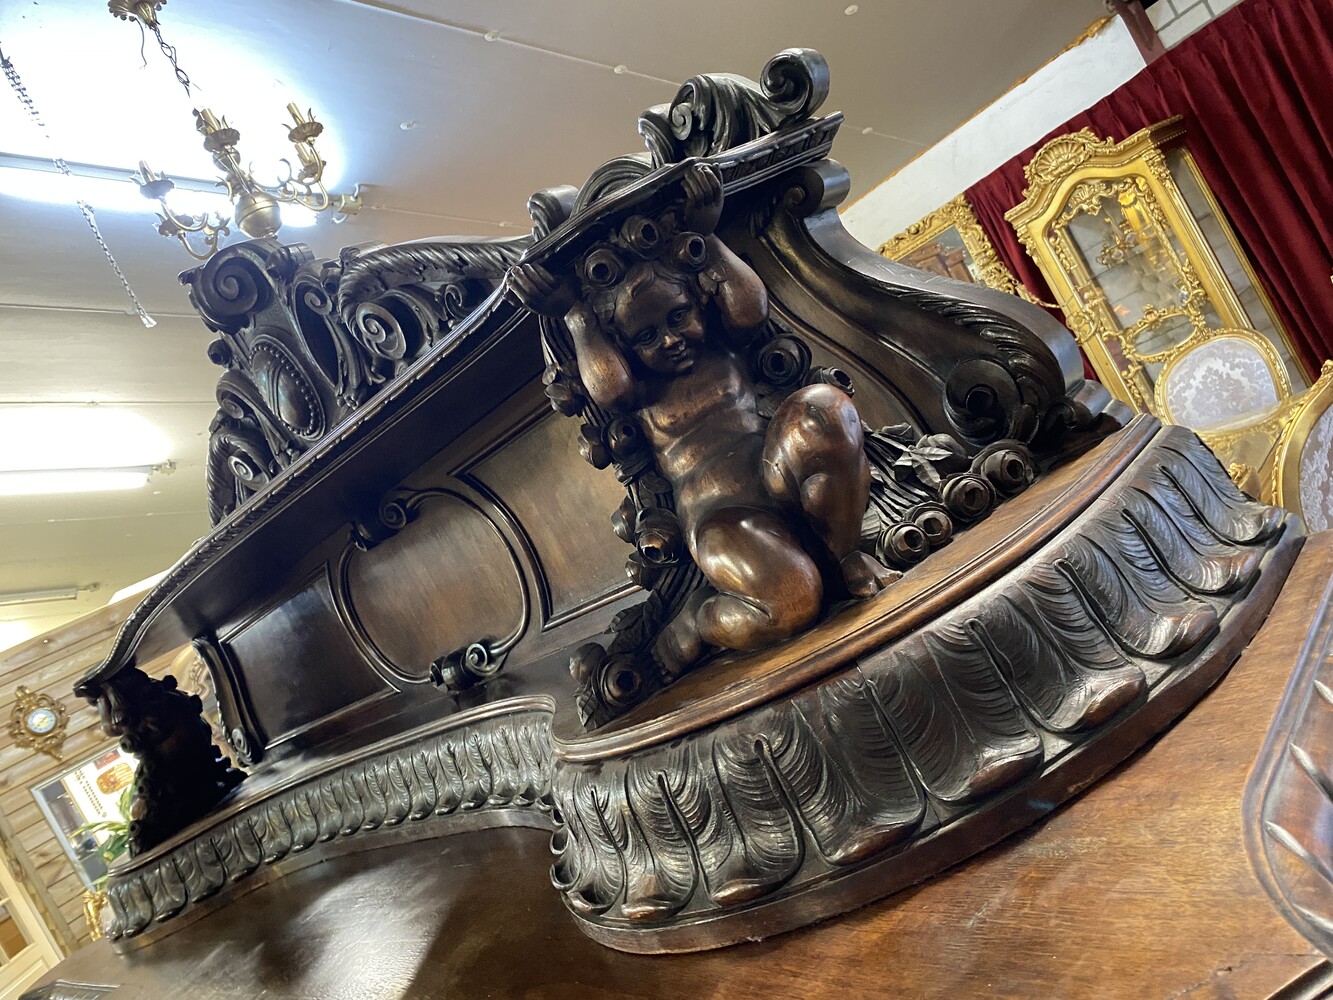 Very special baroque dresser